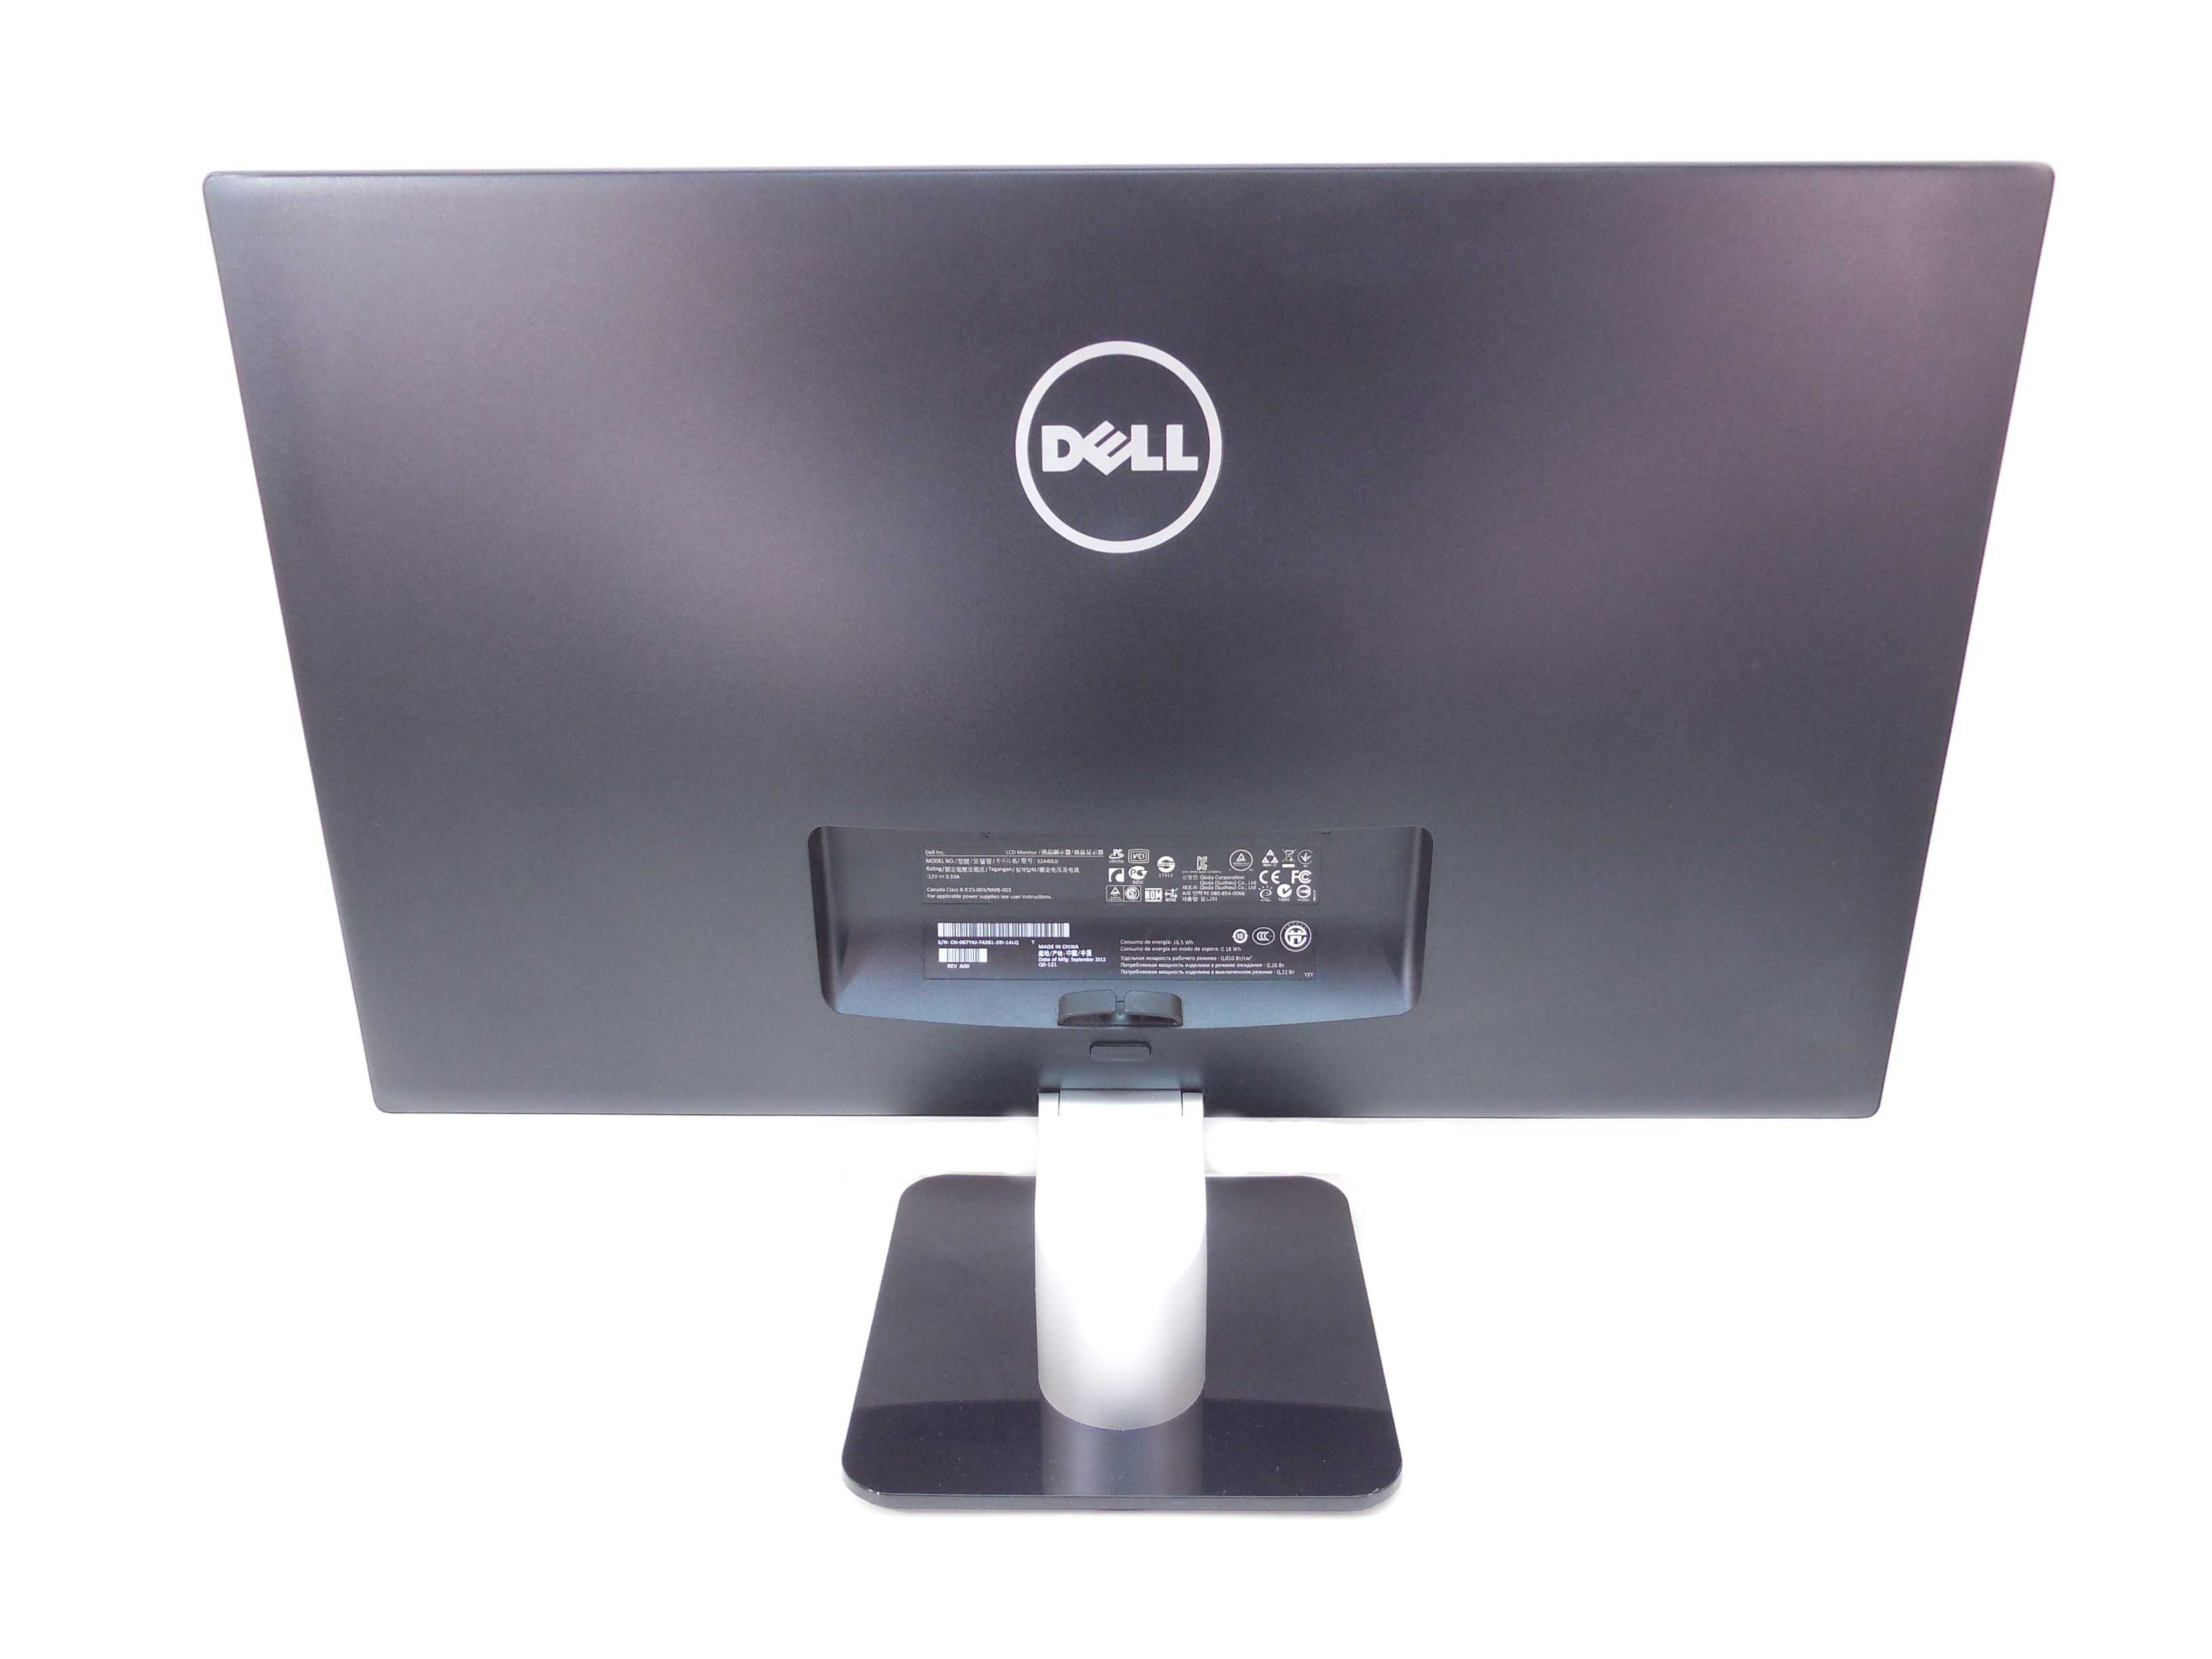 Dell s2440l купить по акционной цене , отзывы и обзоры.